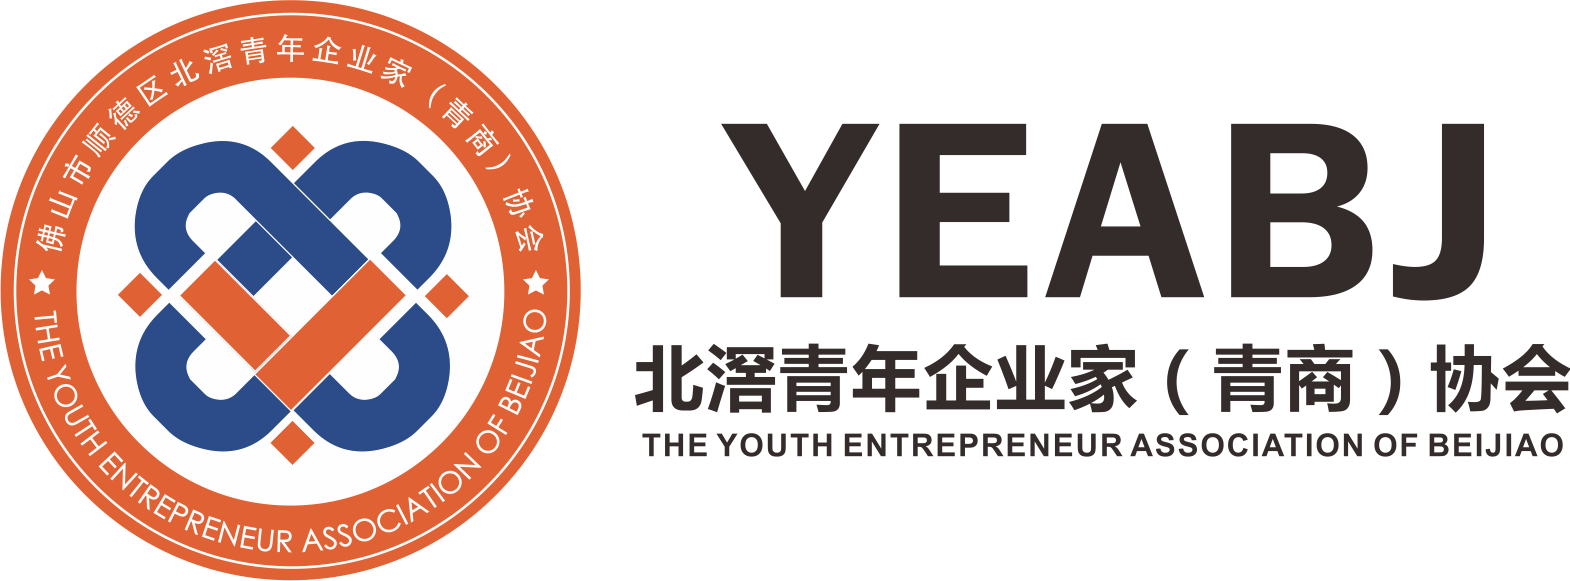 北滘青年企業家協會